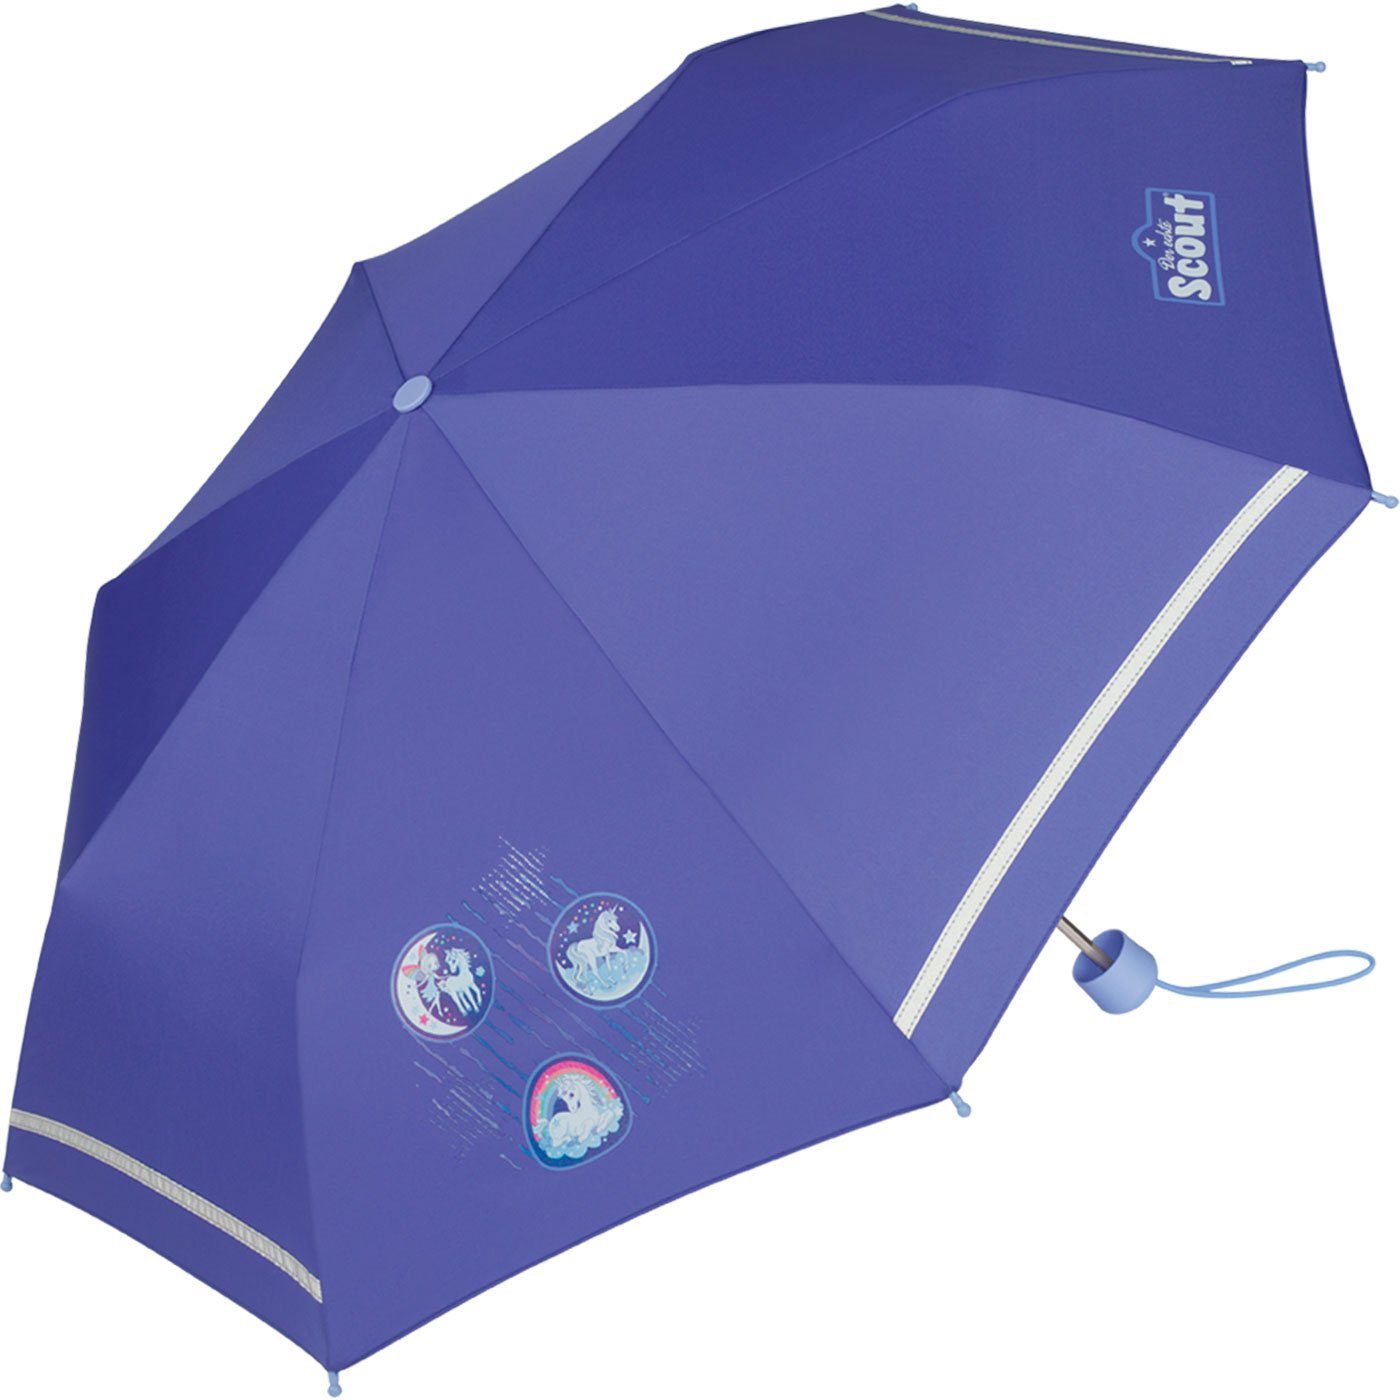 VON LILIENFELD Regenschirm Sicherheit Reflektor Reflektierend Leicht Damen Herren Stabil Finn blau 